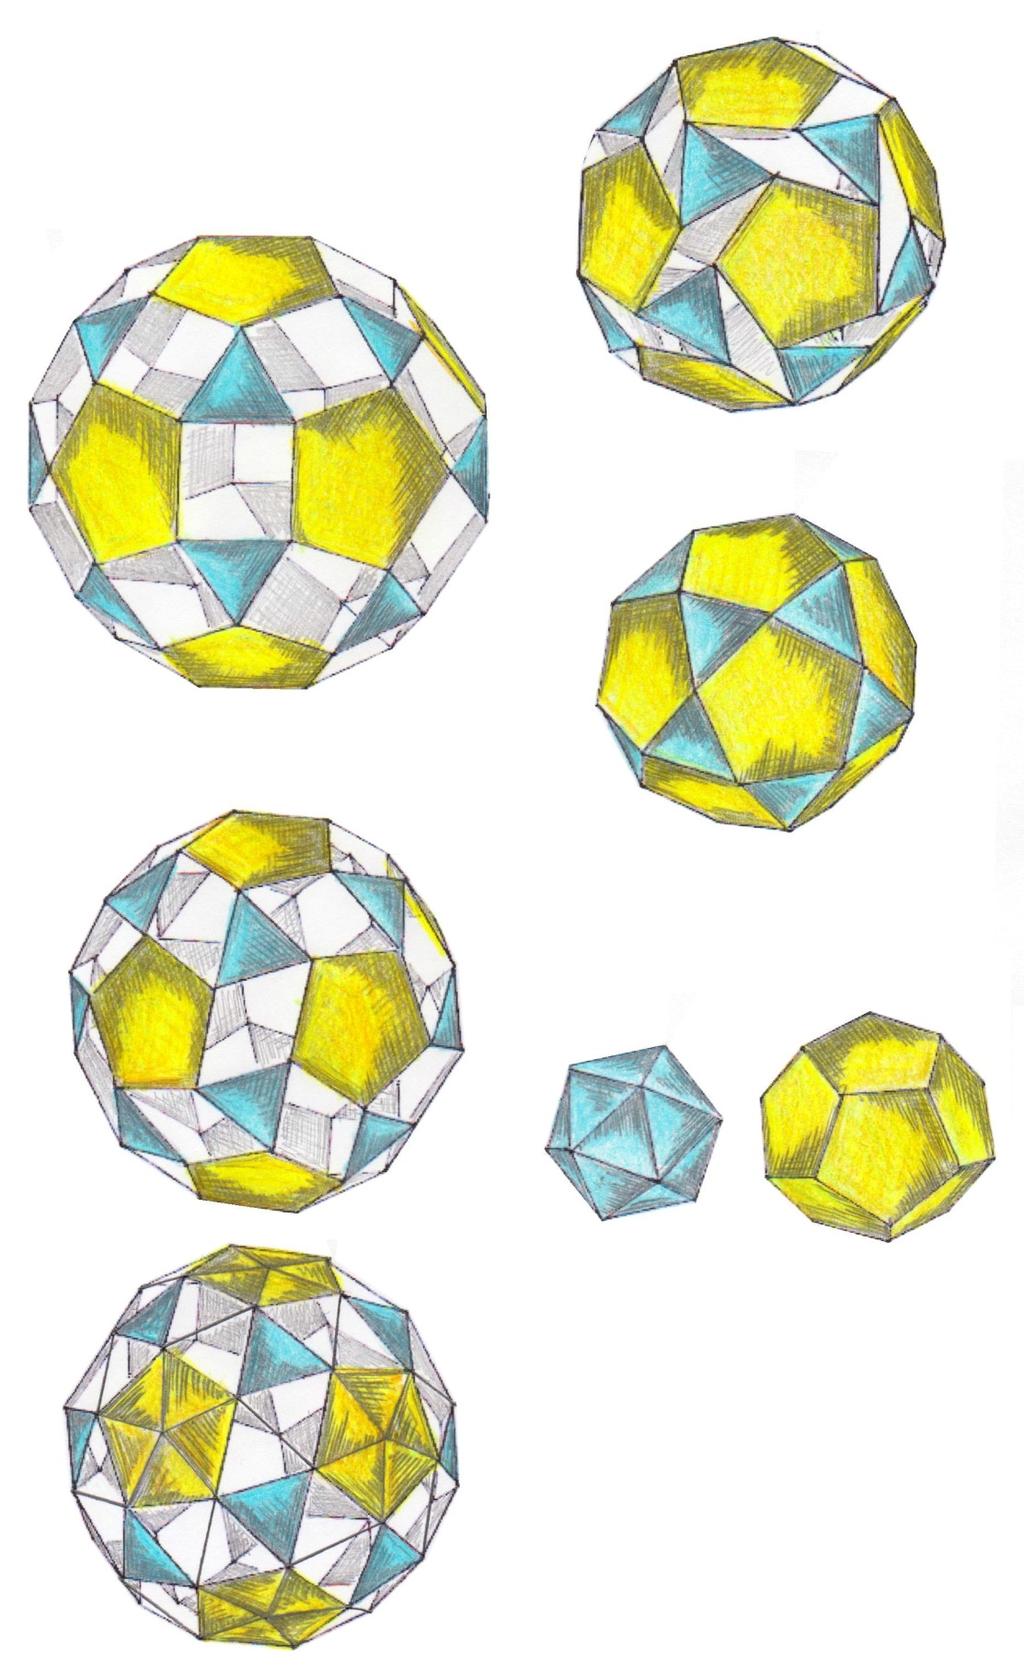 Das Dodecaedron simum, wie es Johannes Kepler nannte, ist ein Archimedischer Körper aus 12 regelmässigen Fünfecken